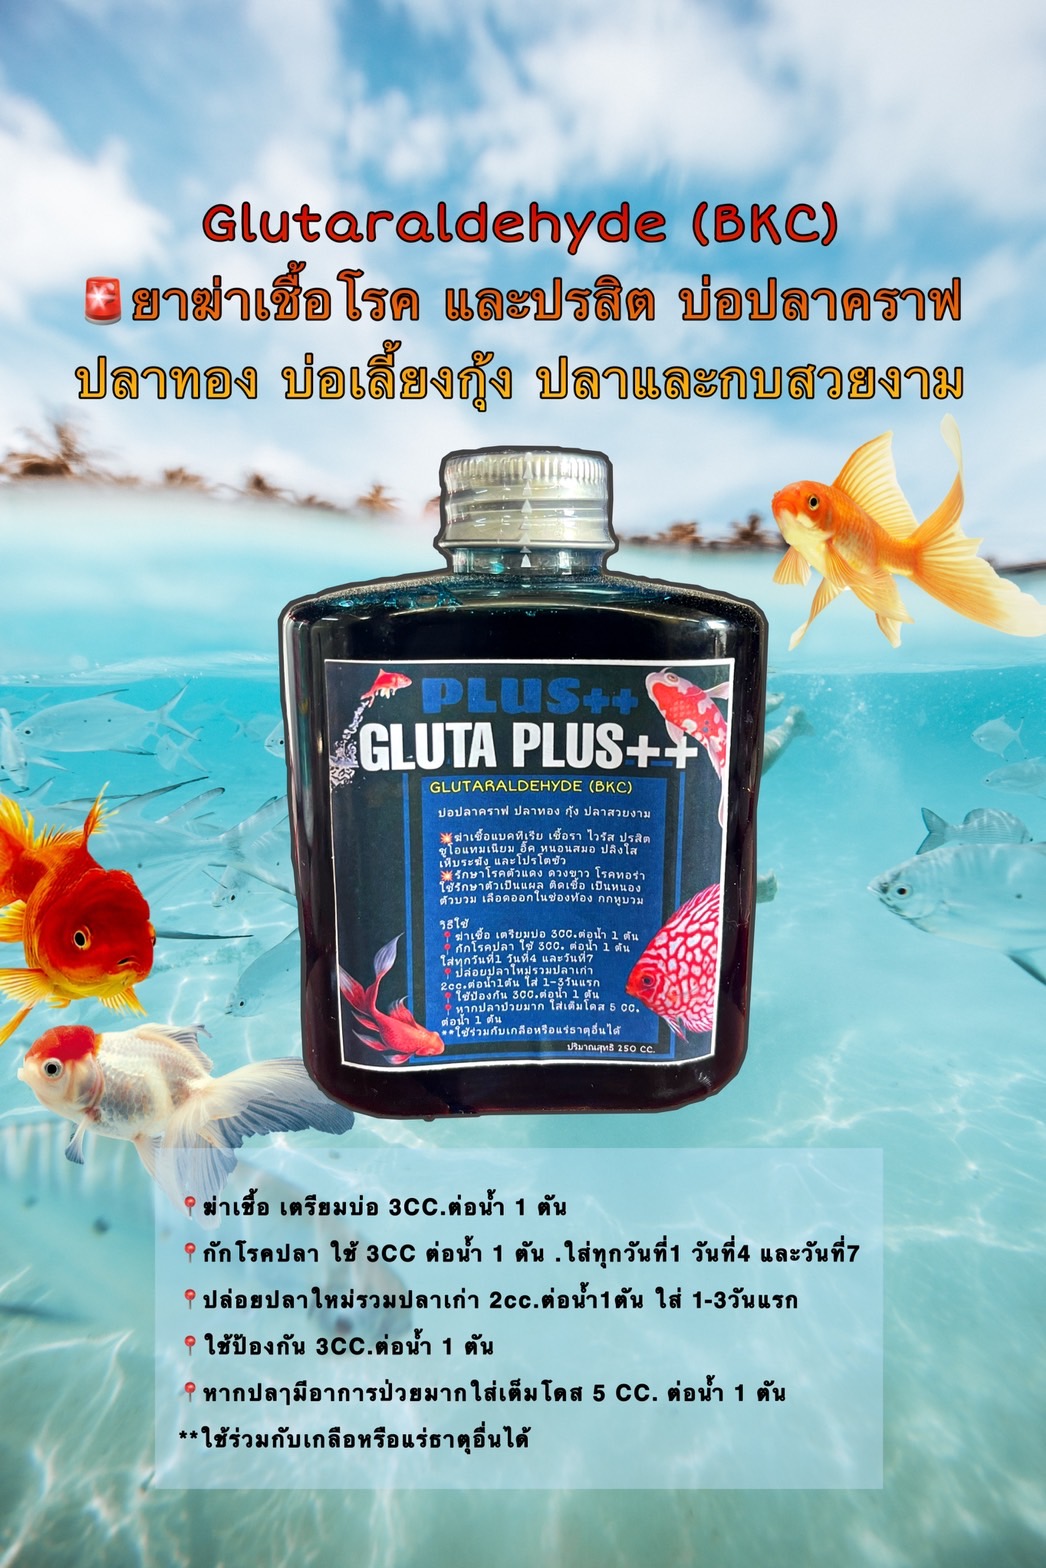 เกี่ยวกับสินค้า Glldehyde bkc ยาปลา กำจัดปรสิต แบคทuเรีย ปลาคาร์ฟและสัตว์น้ำ บรรจุ 250 ml.